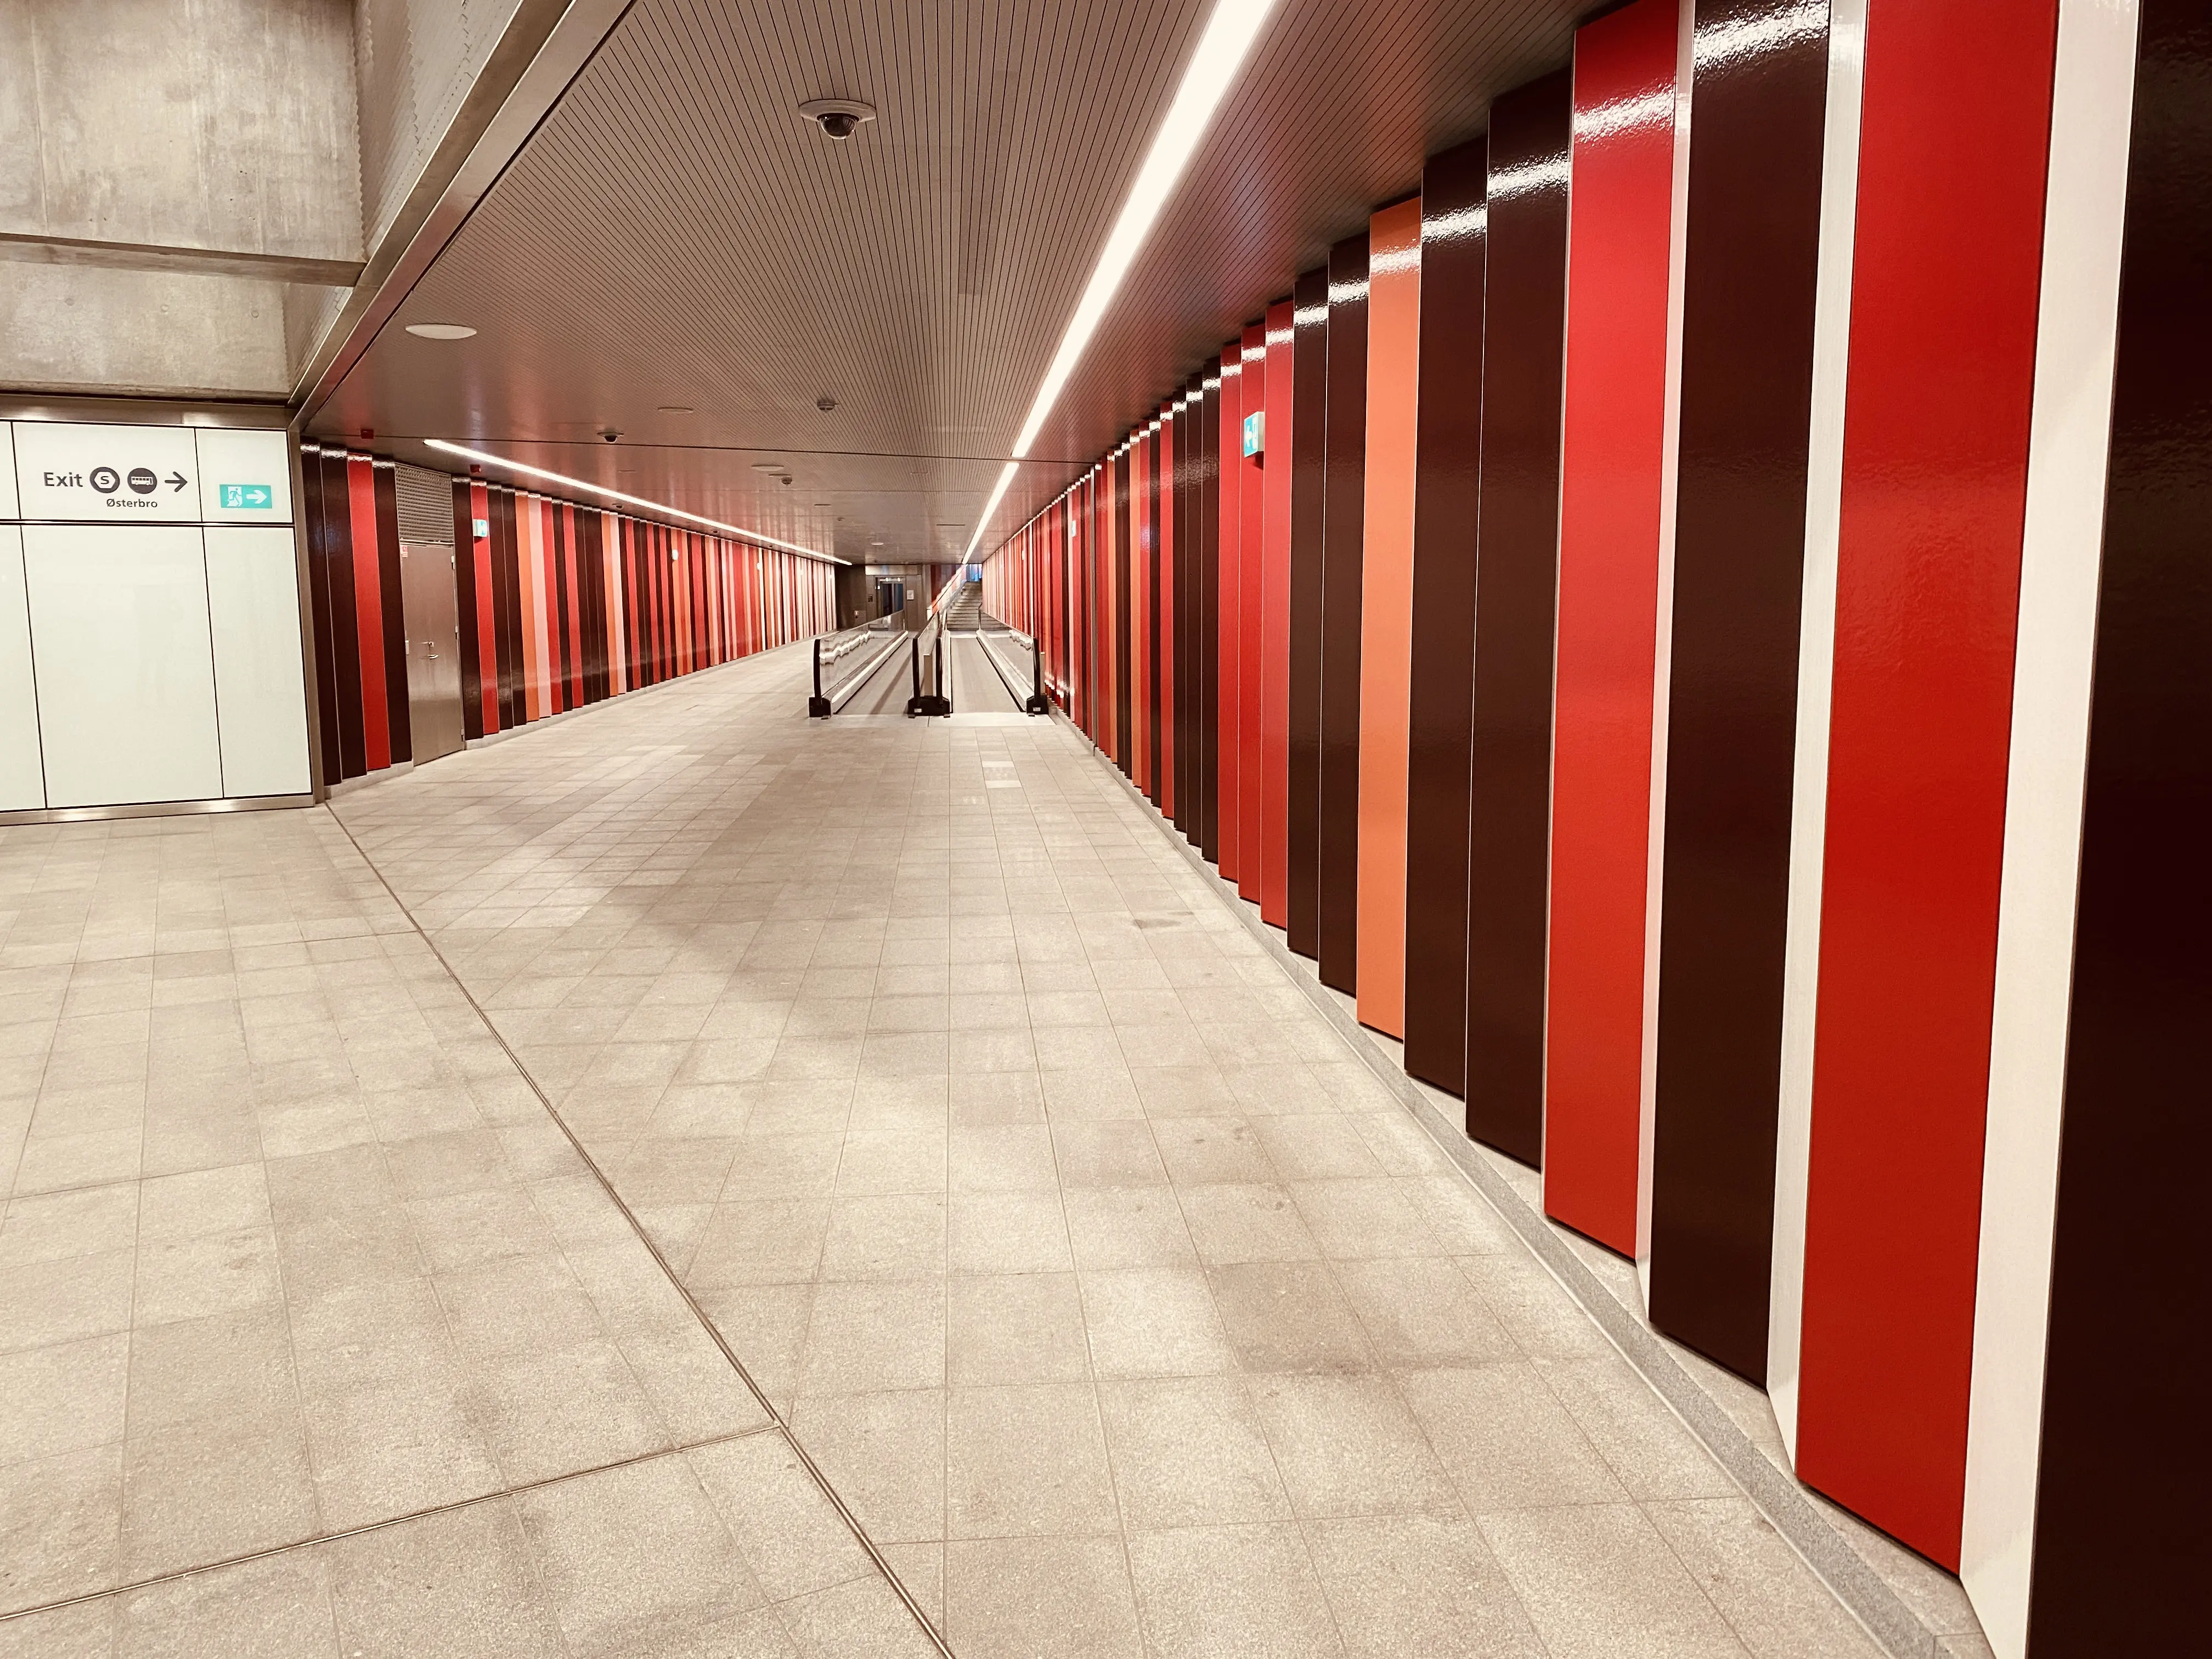 Nordhavn Metrostation har en varm og dyb rød farve, der signalerer trafik, transport og transit.